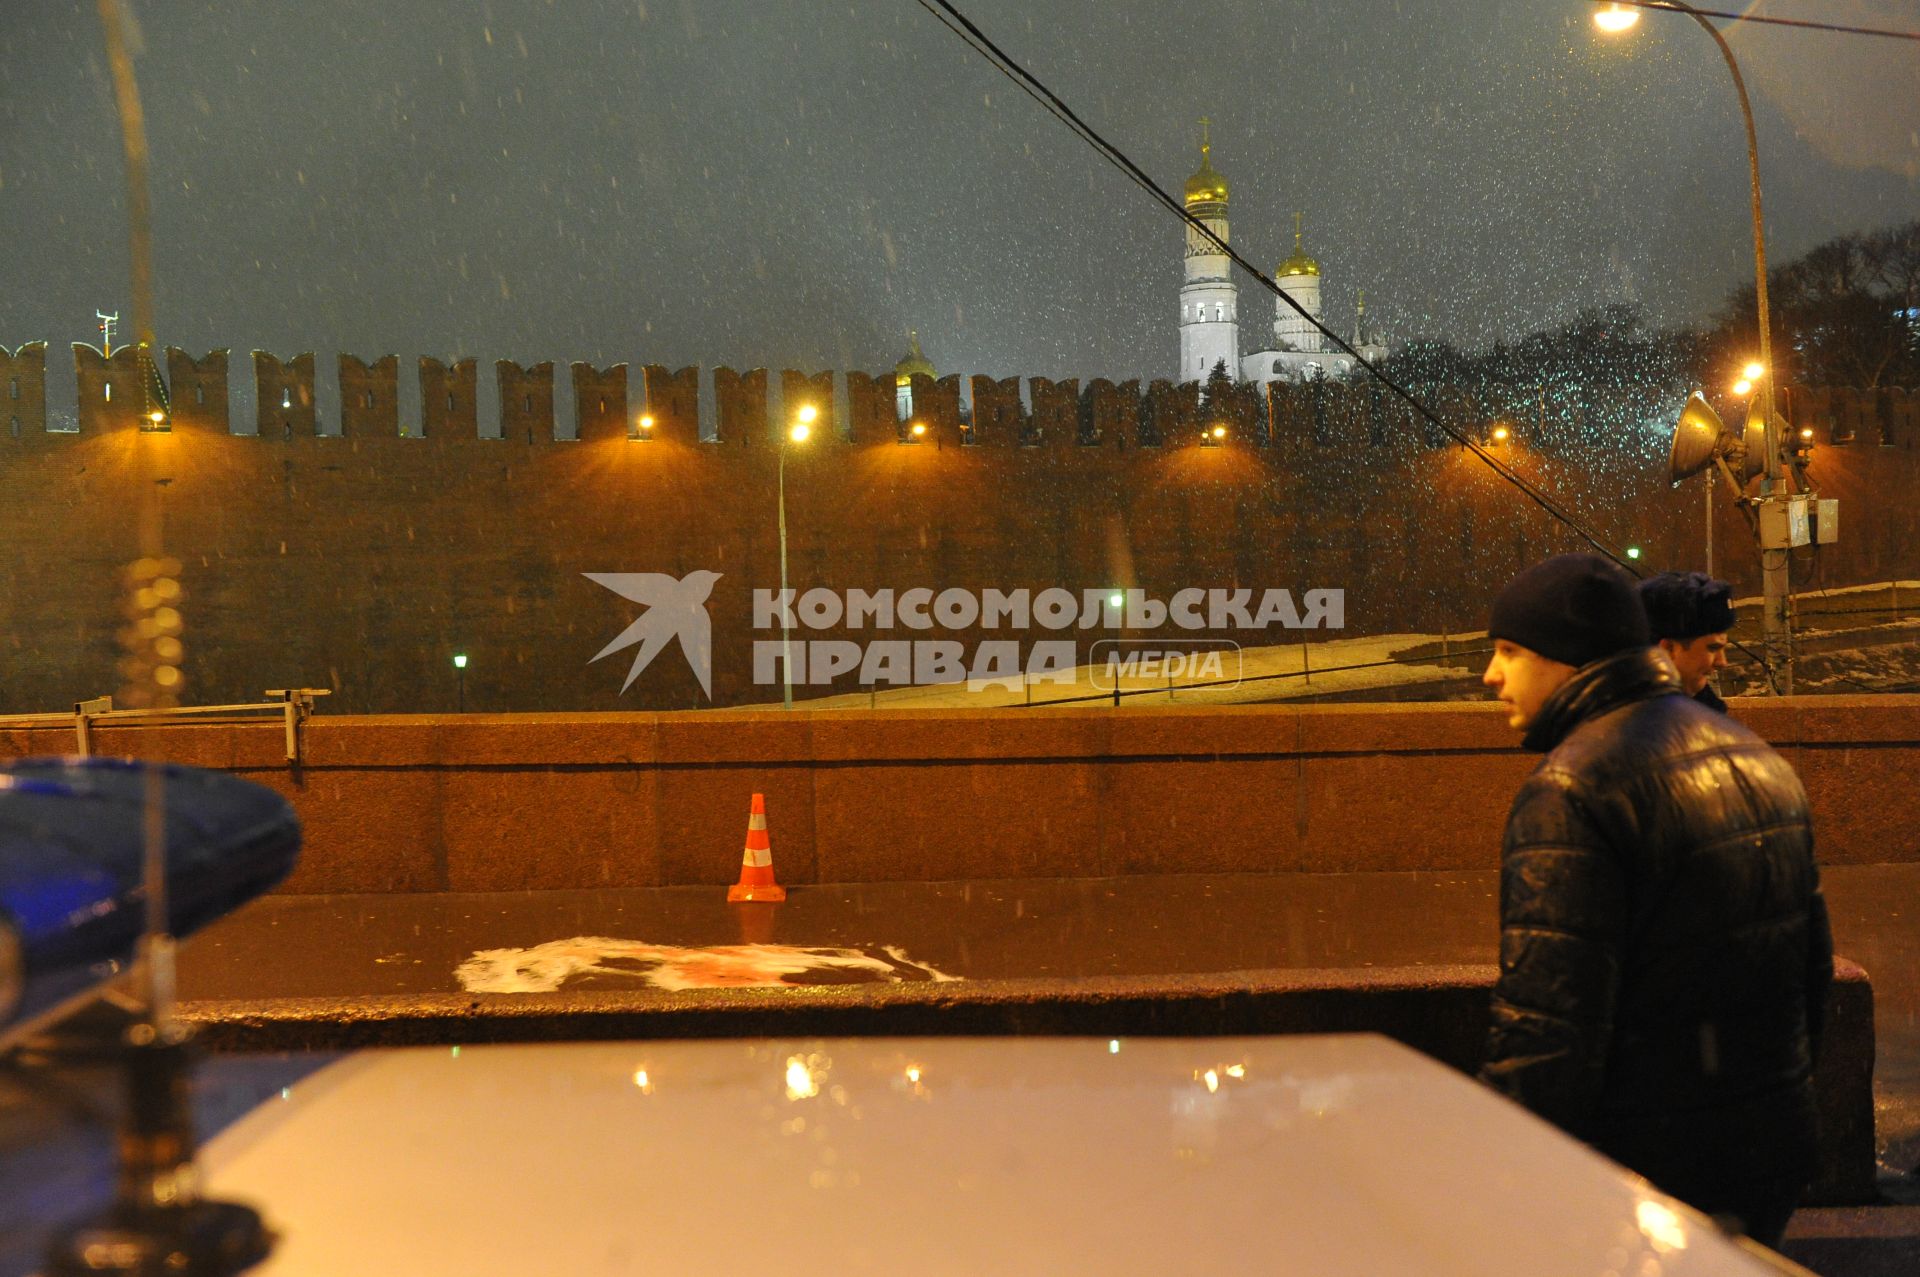 Место убийства политика Бориса Немцова, который был застрелен на Большом Москворецком мосту в ночь с 27-го на 28-е февраля 2015 г. в Москве.